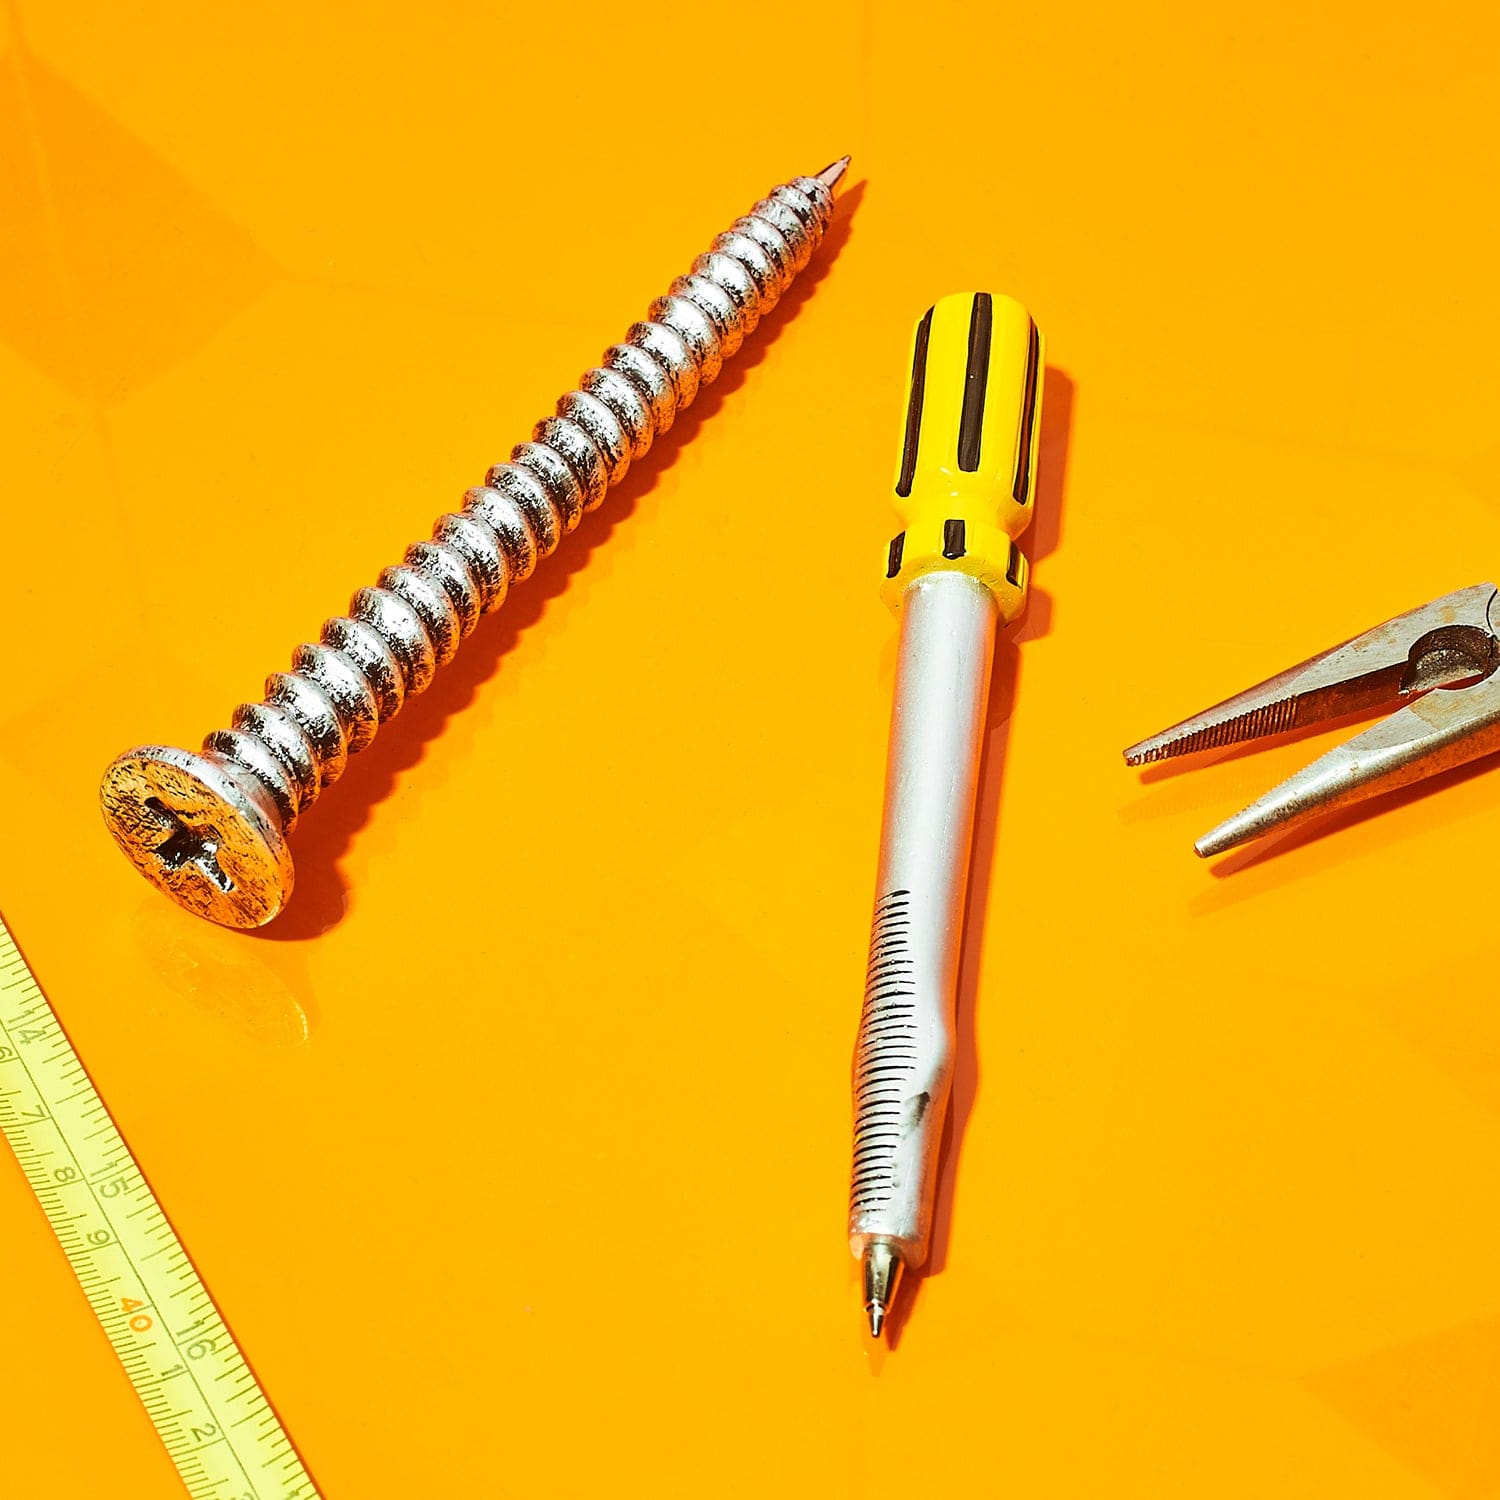 Builder Tool Pen 0623 - Q223 - Xmasinjuly